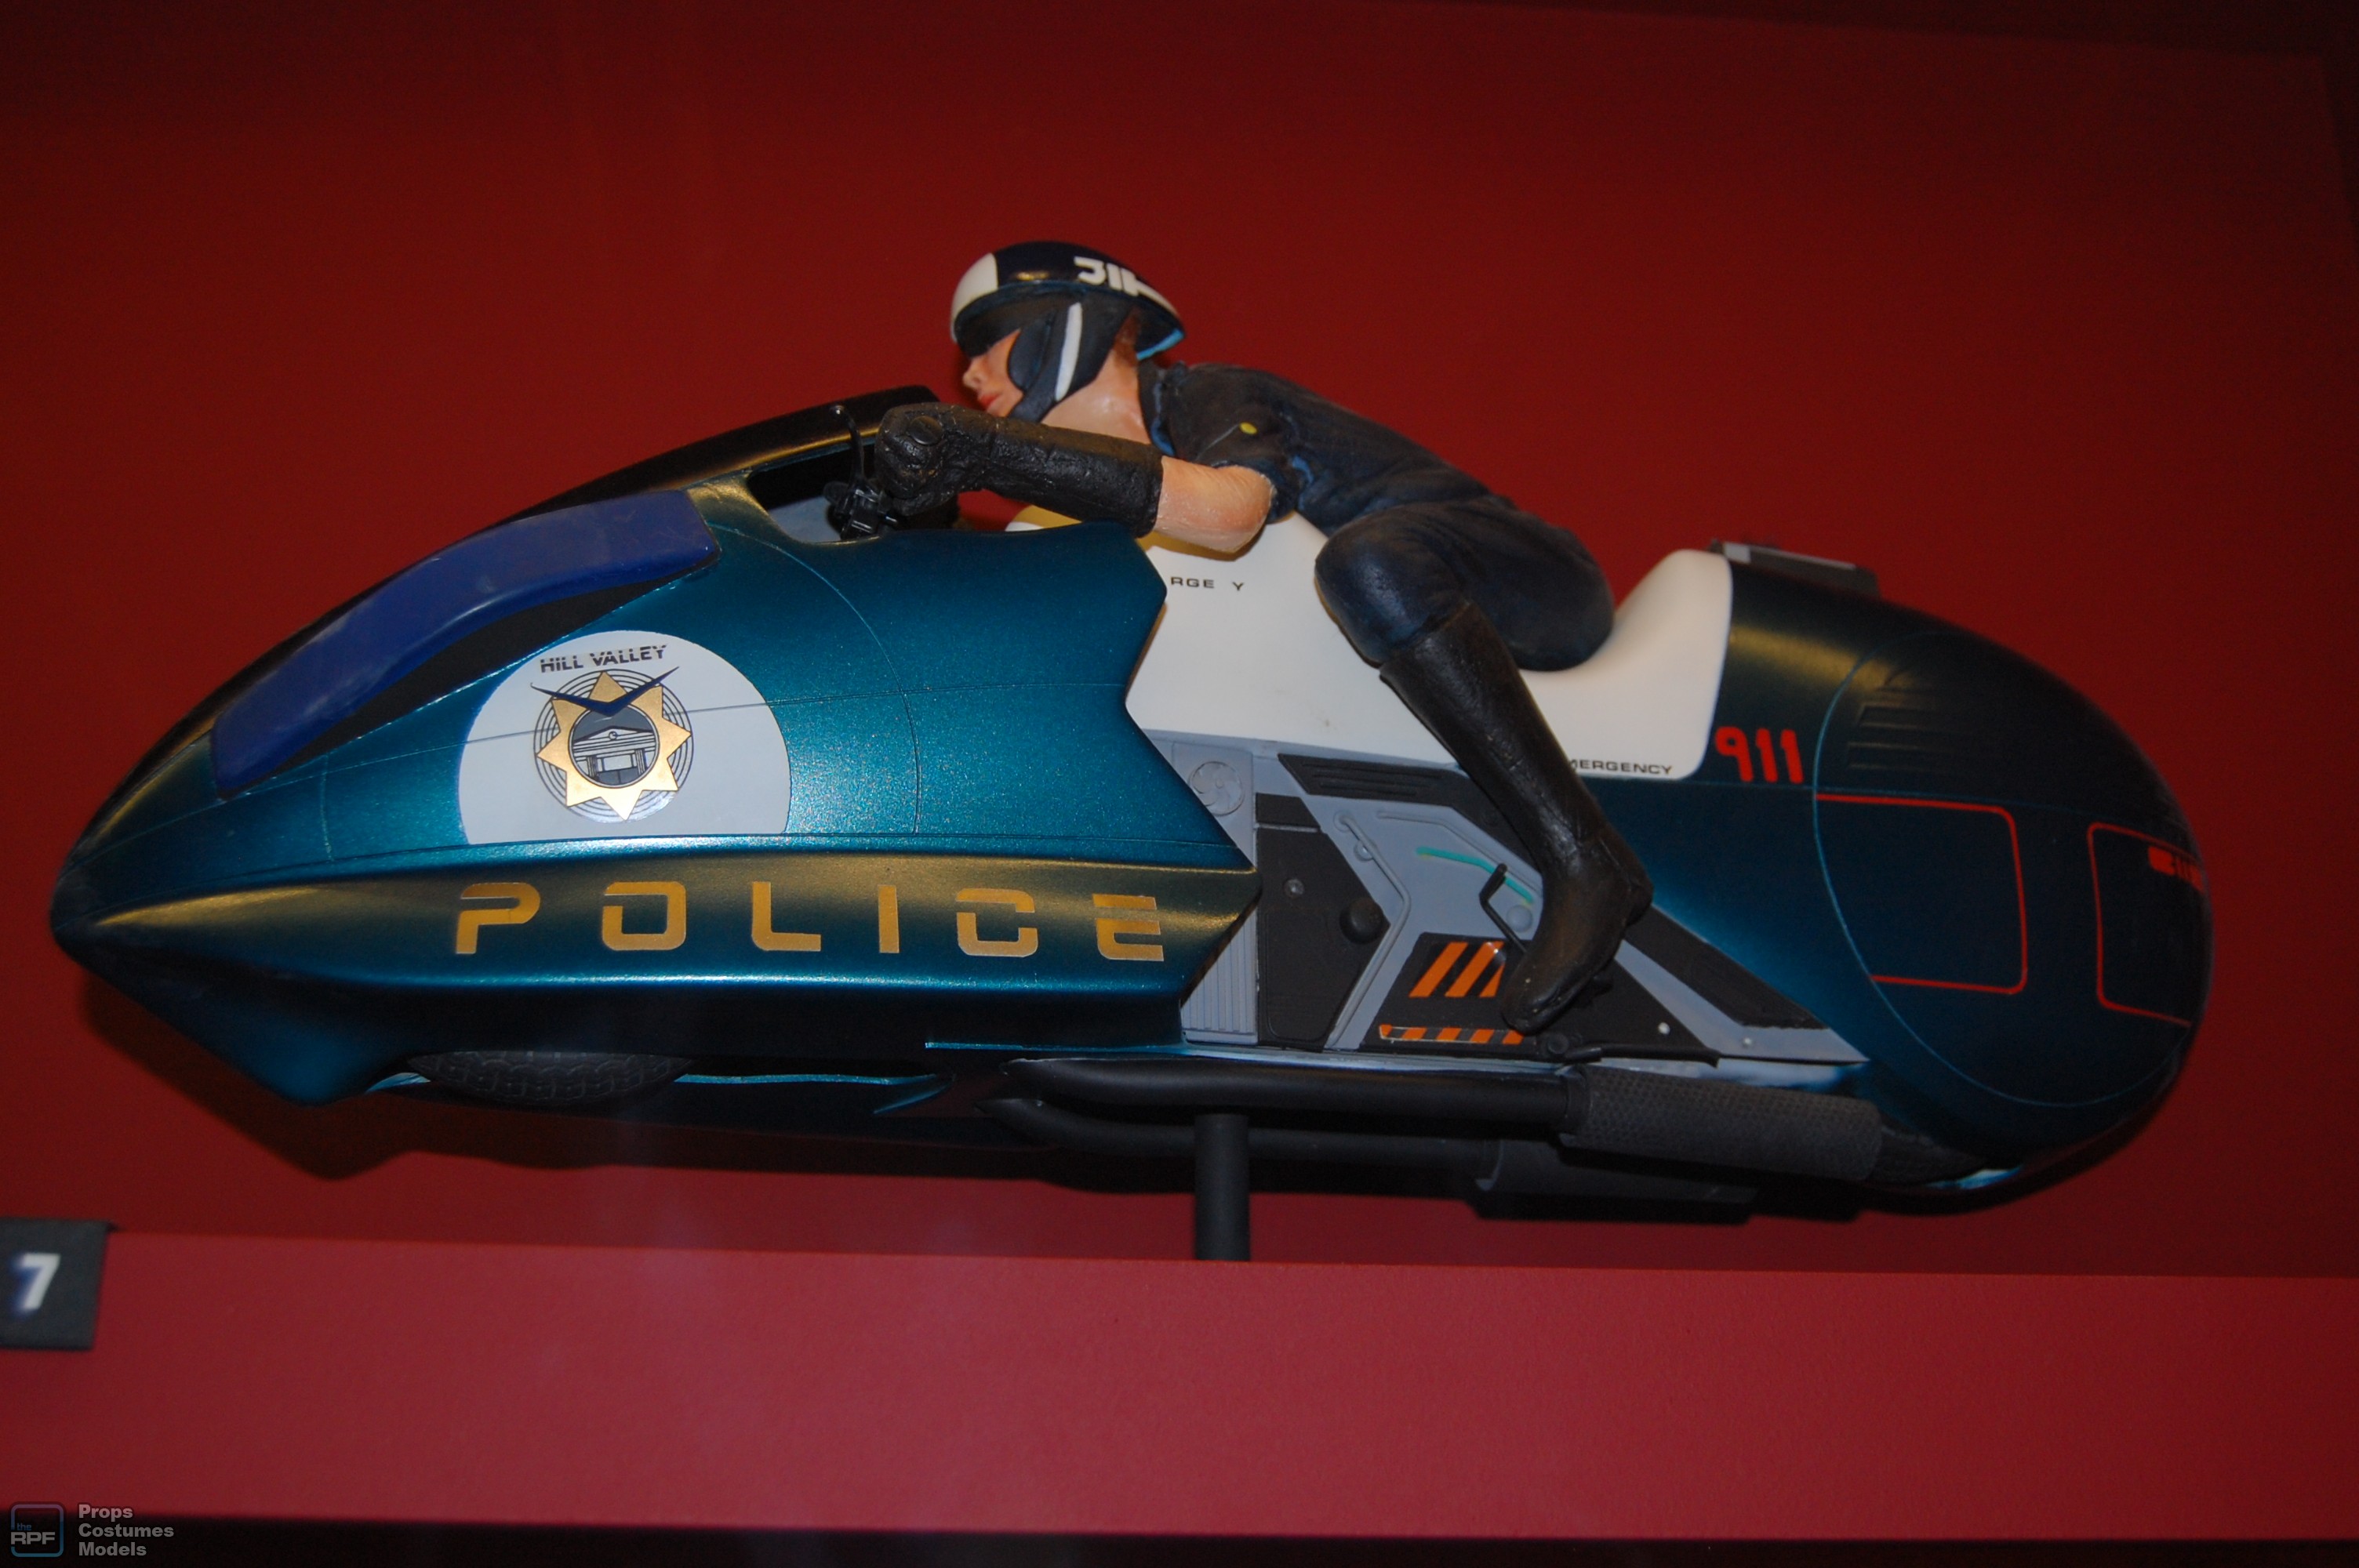 police bike model